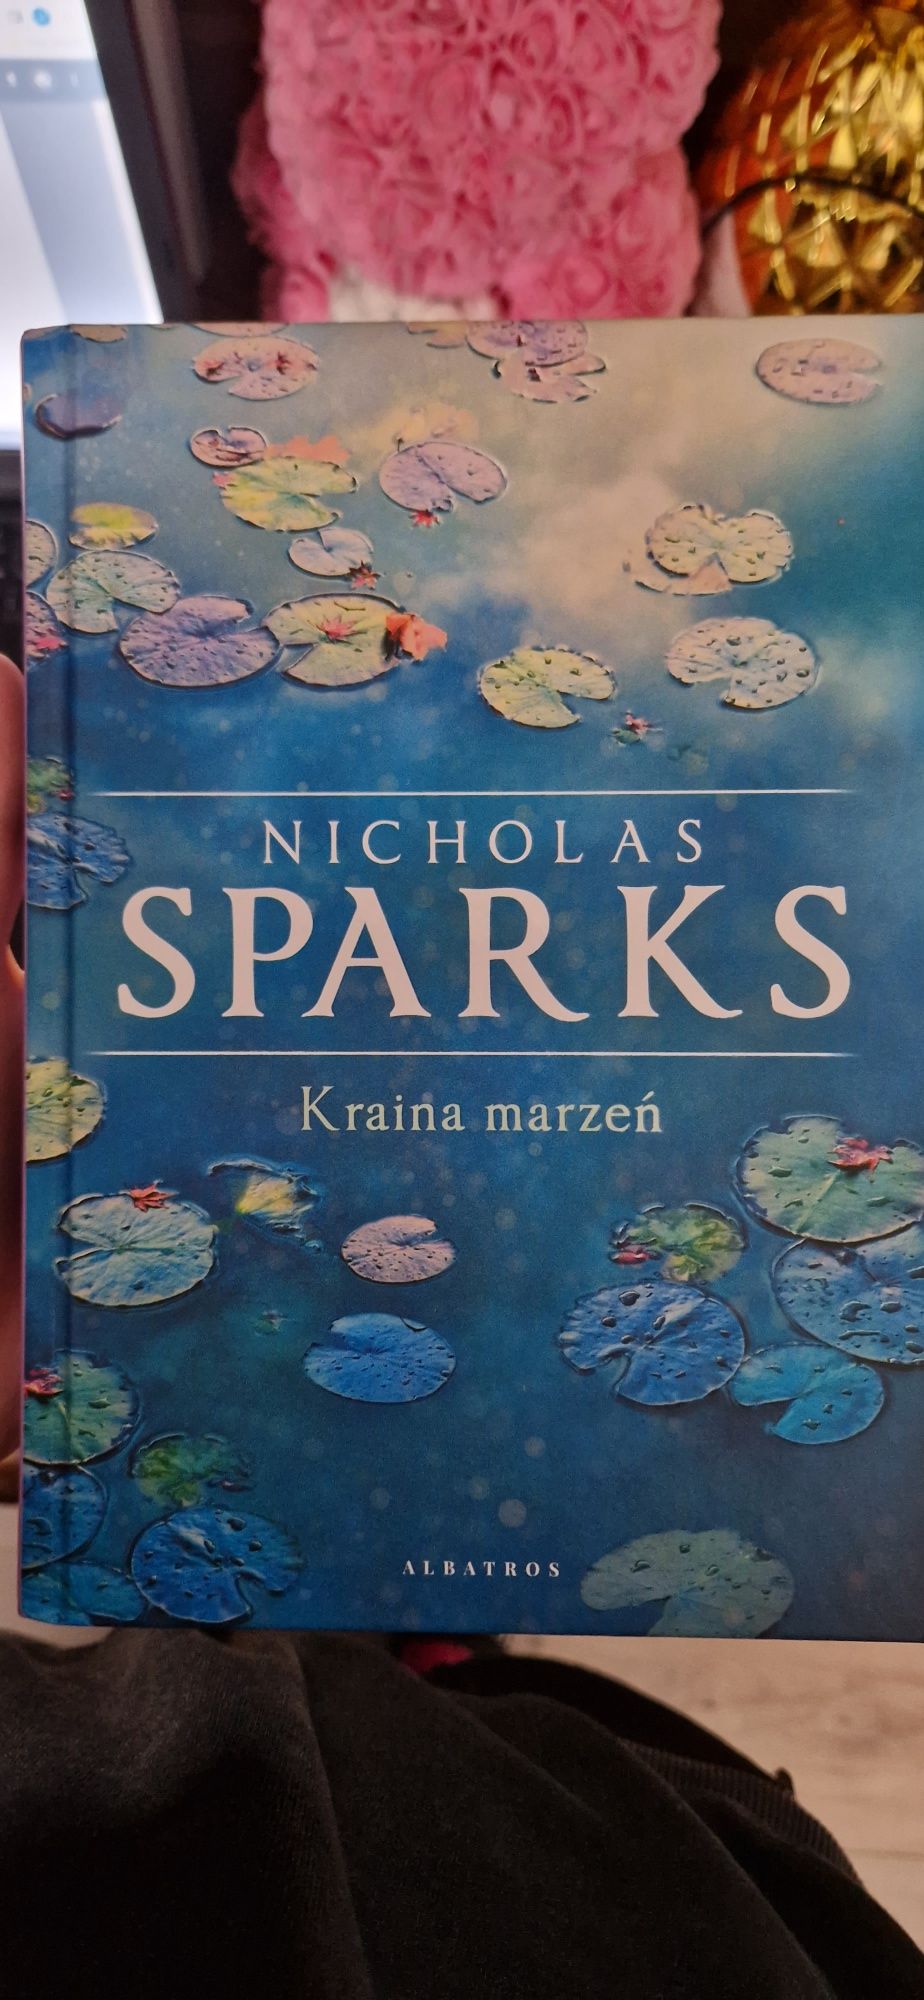 Nicholas Sparks " Kraina marzeń "